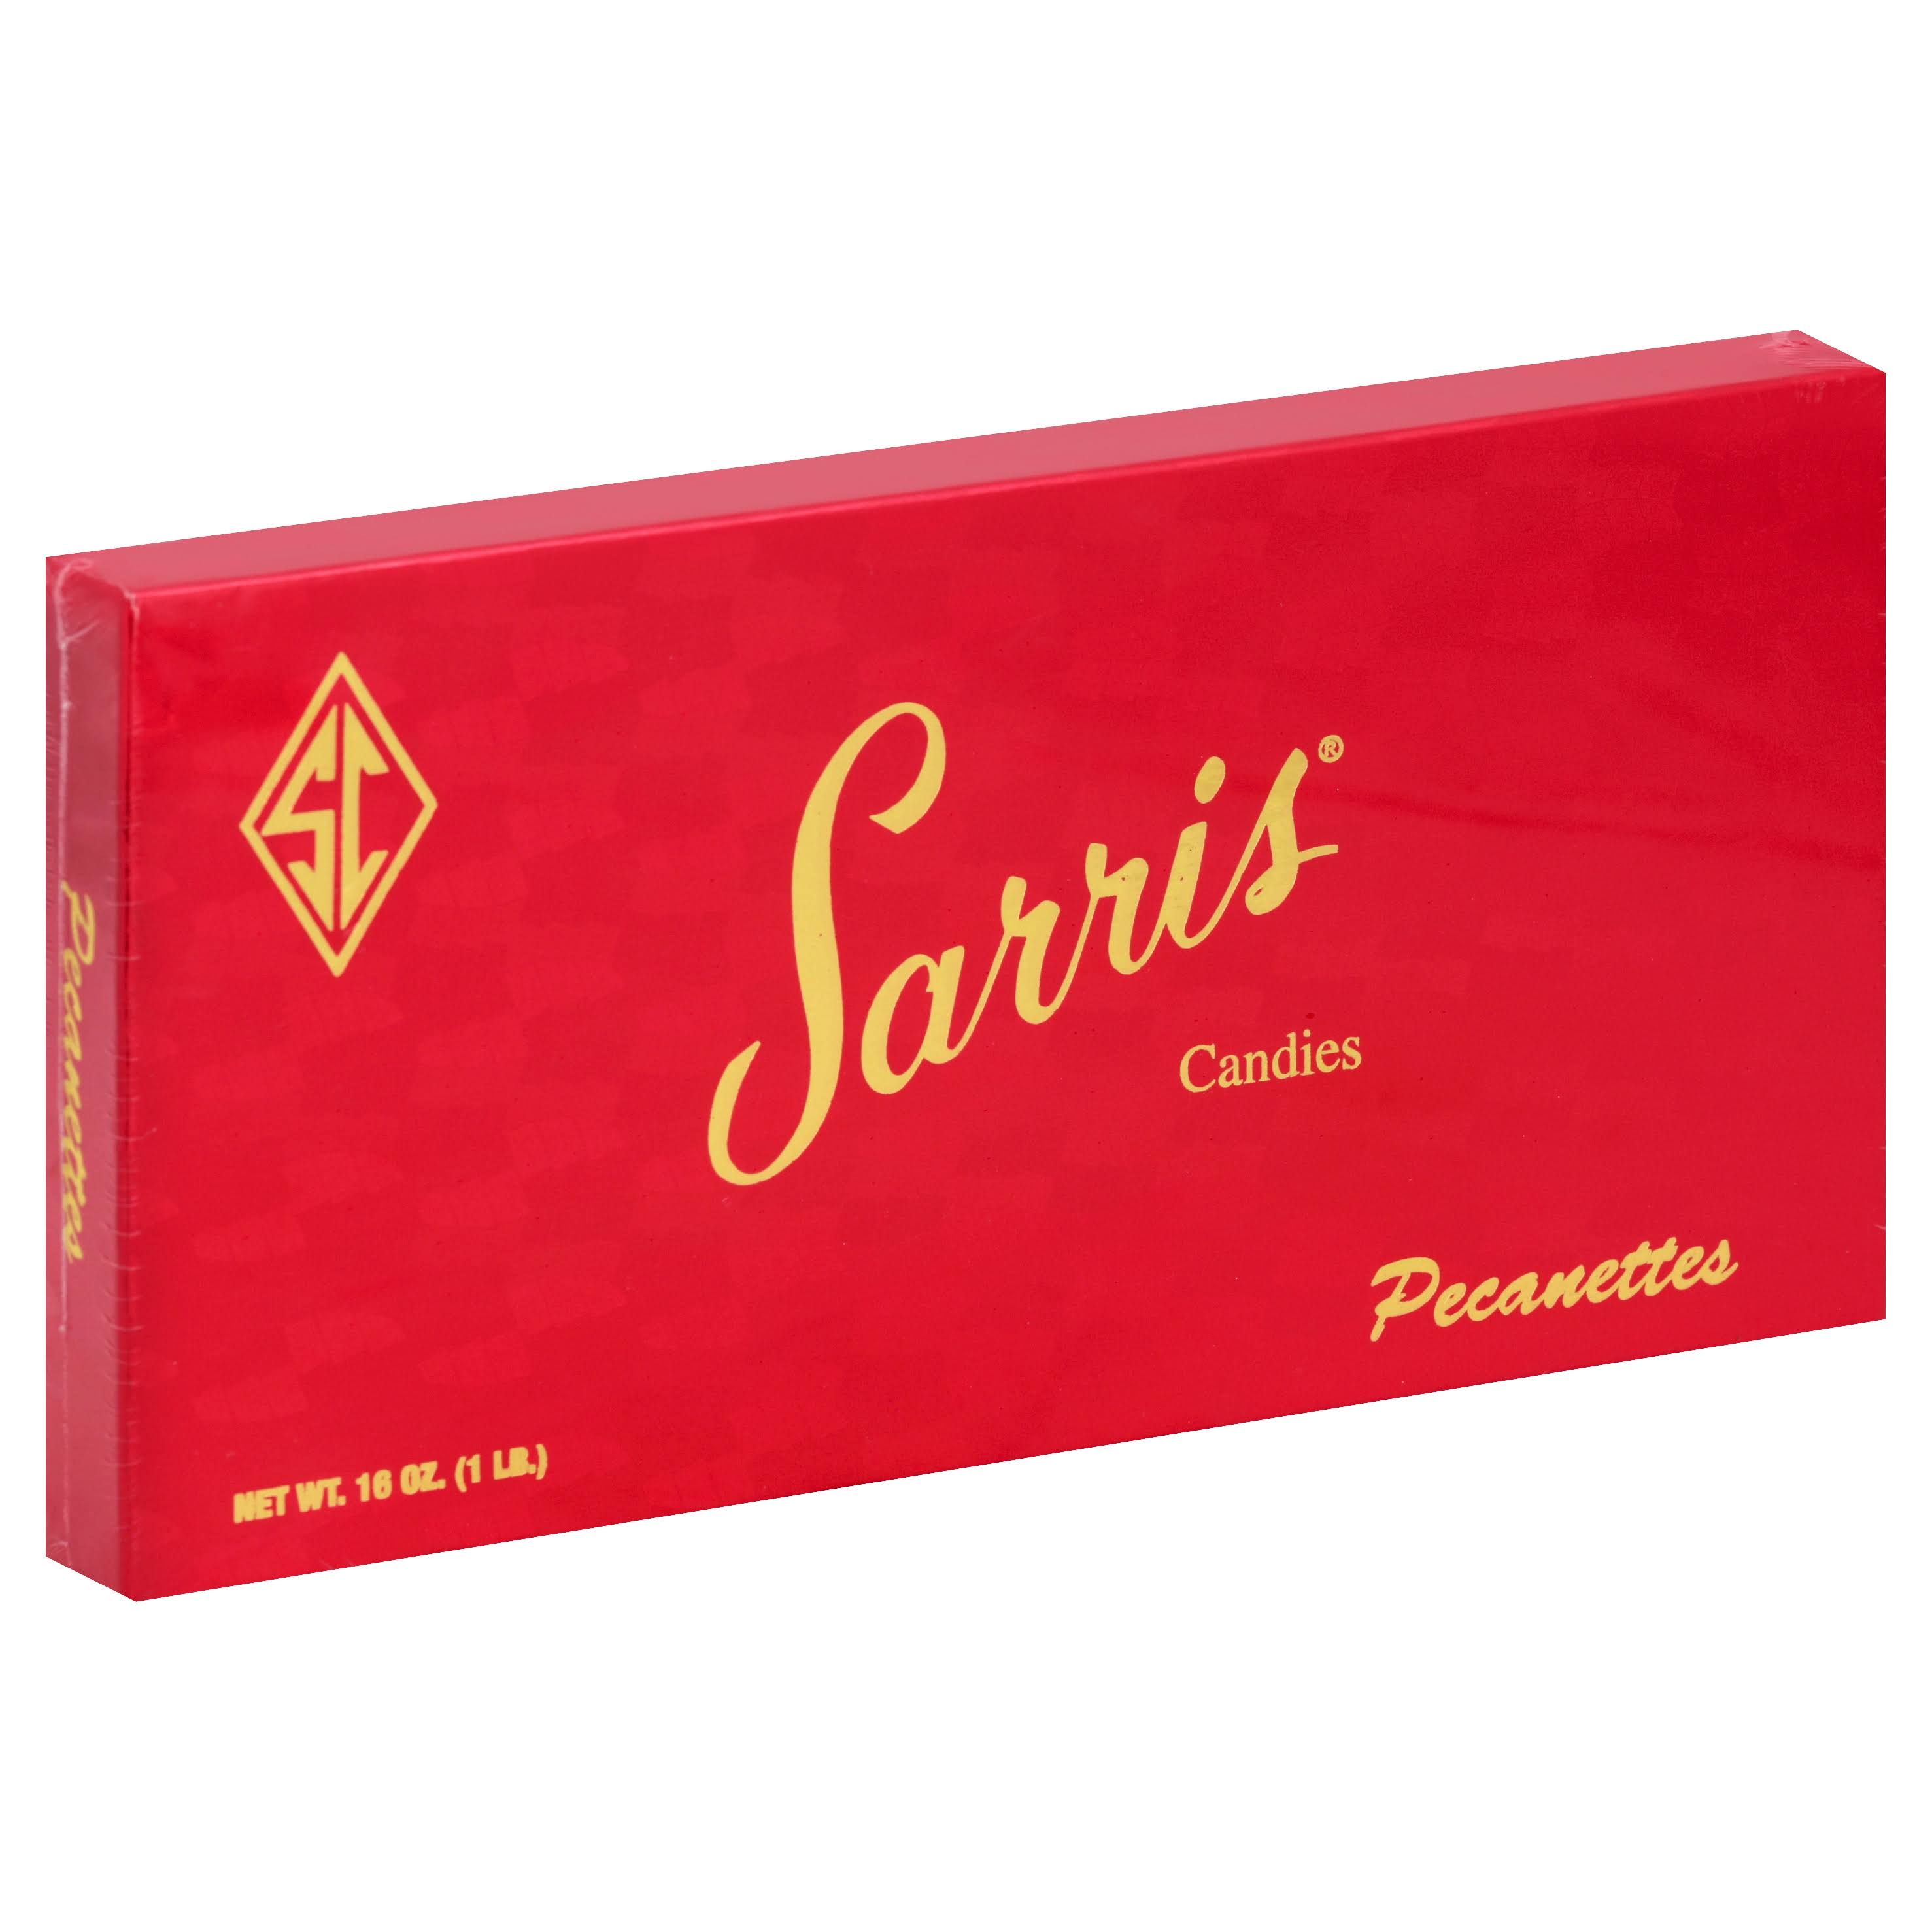 Sarris Candies Candies, Pecanettes - 16 oz